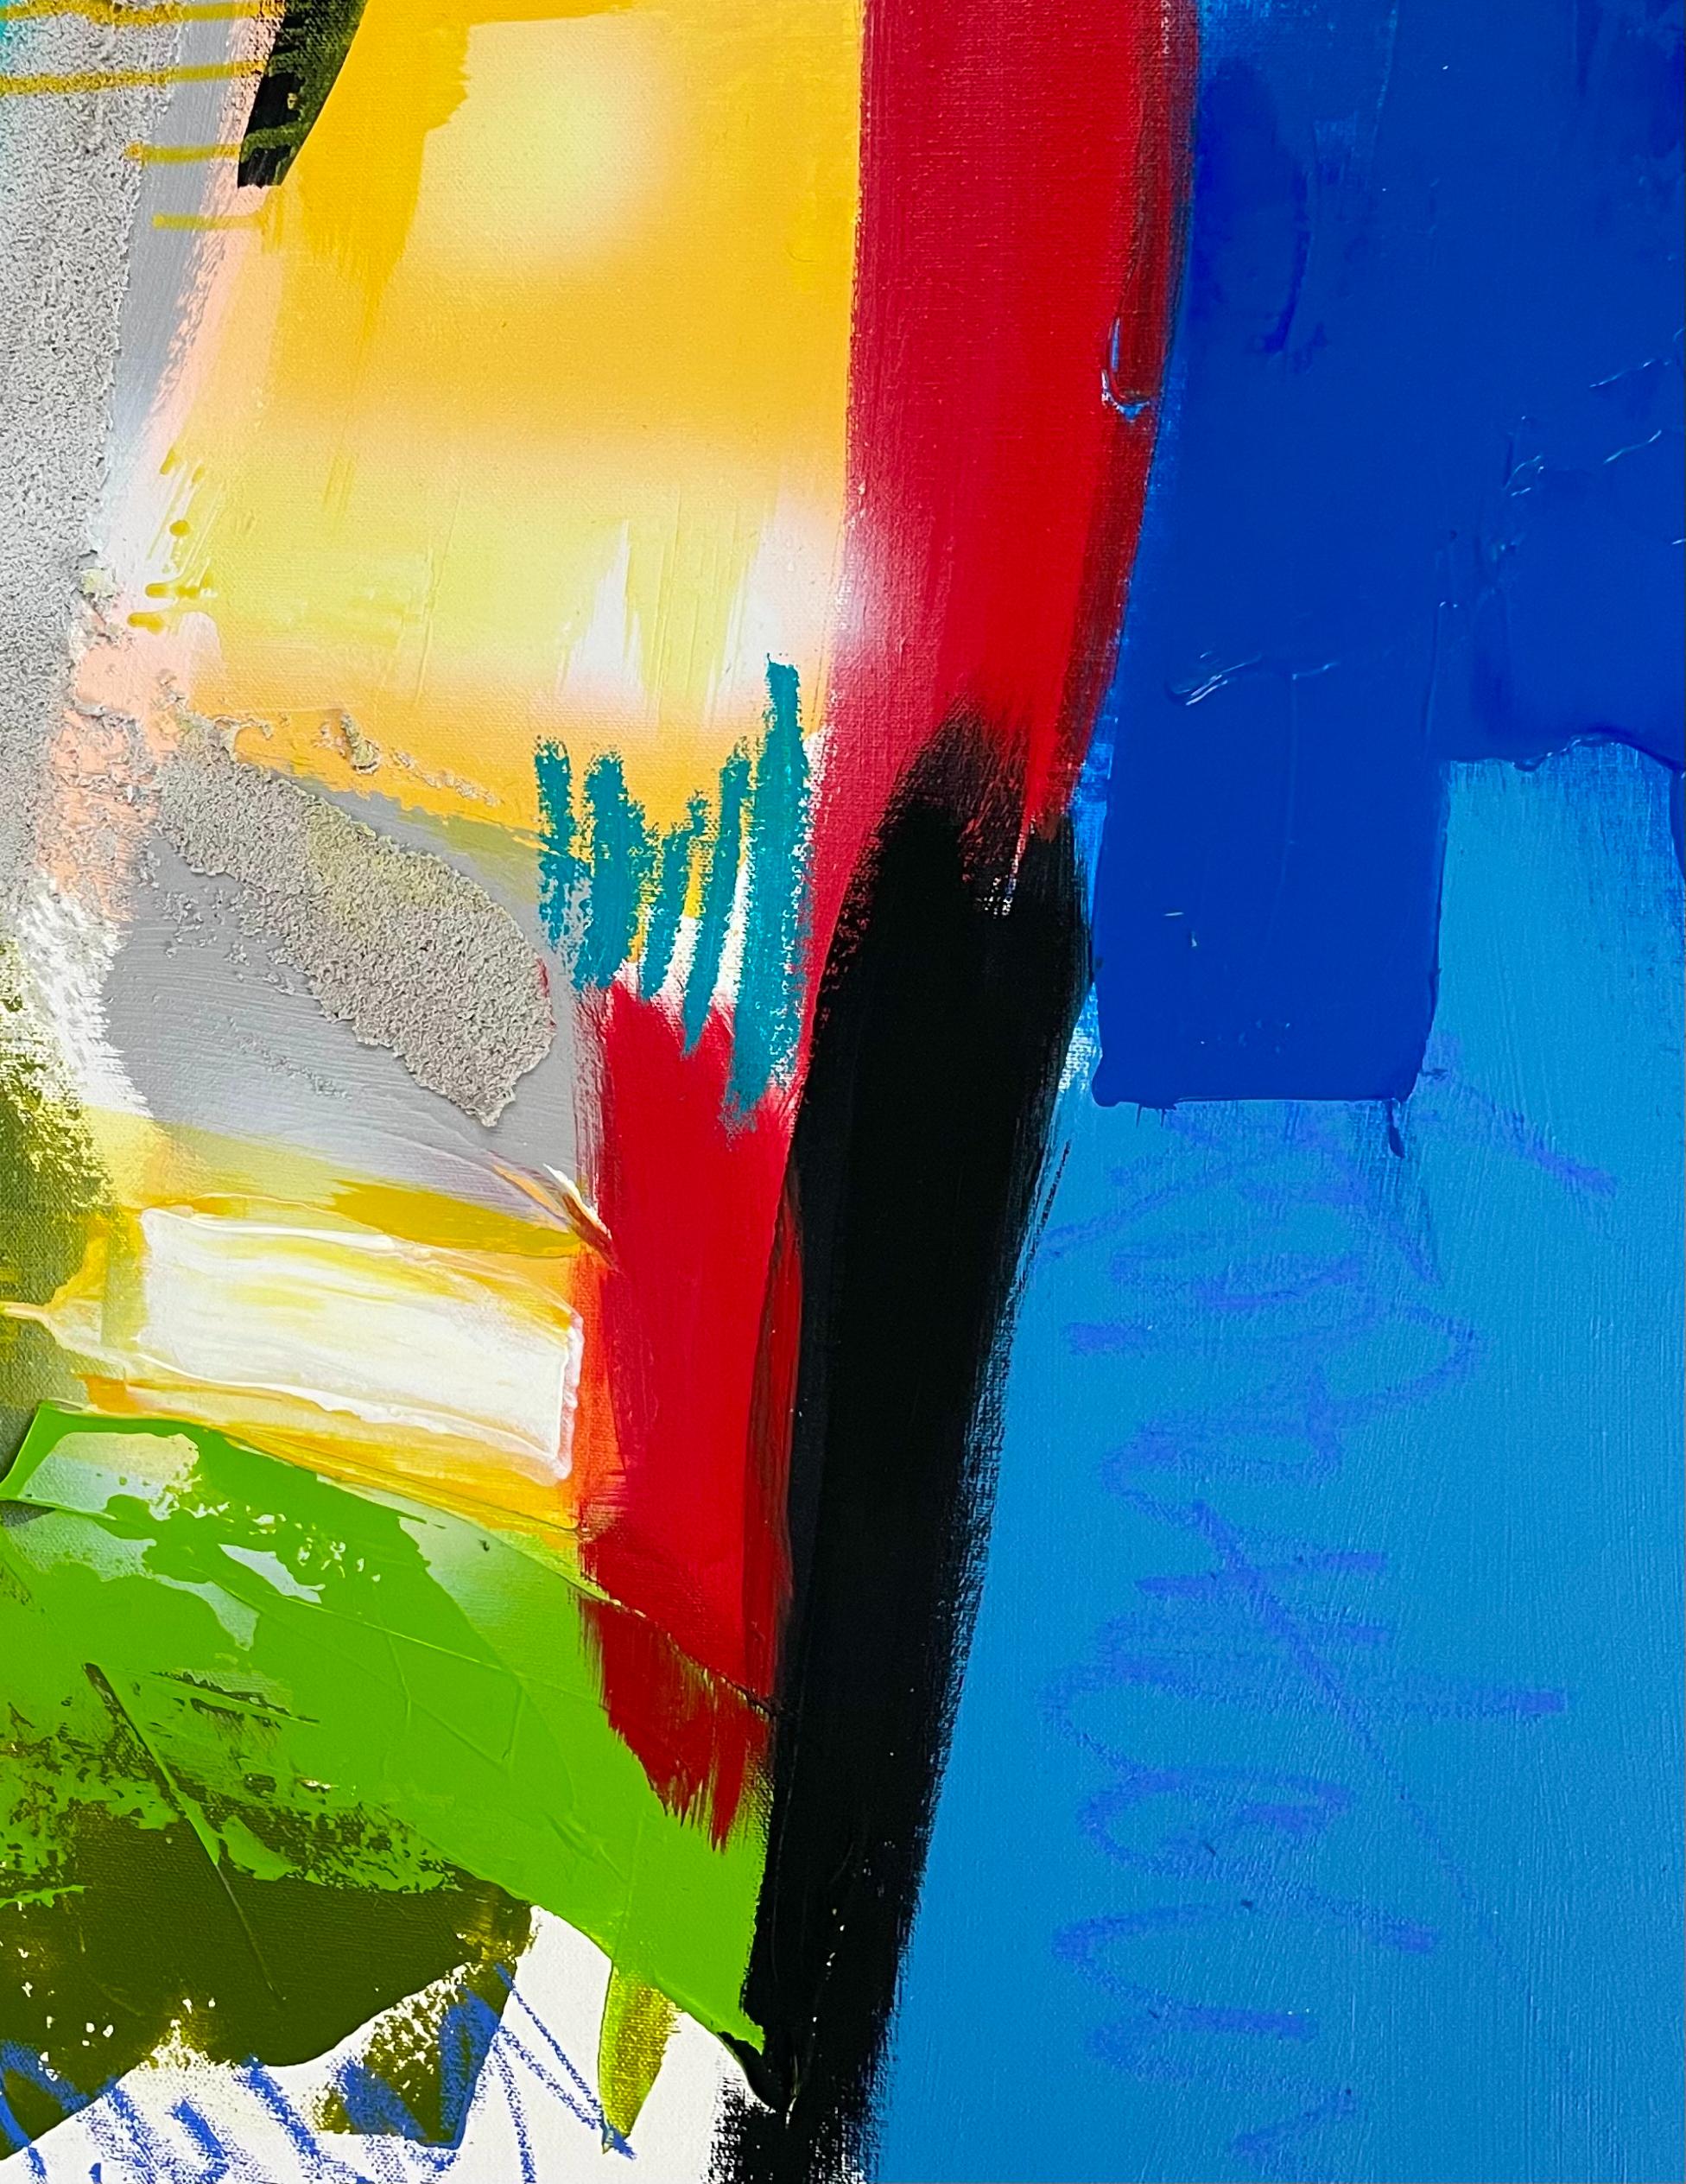 Altona 88 est  une acrylique abstraite,  une œuvre mixte de Paddy Cohn achevée à l'automne 2021. Elle est emballée pour la galerie, il n'est donc pas nécessaire de l'encadrer. Remarquez comment les couleurs  se fondent les uns dans les autres au